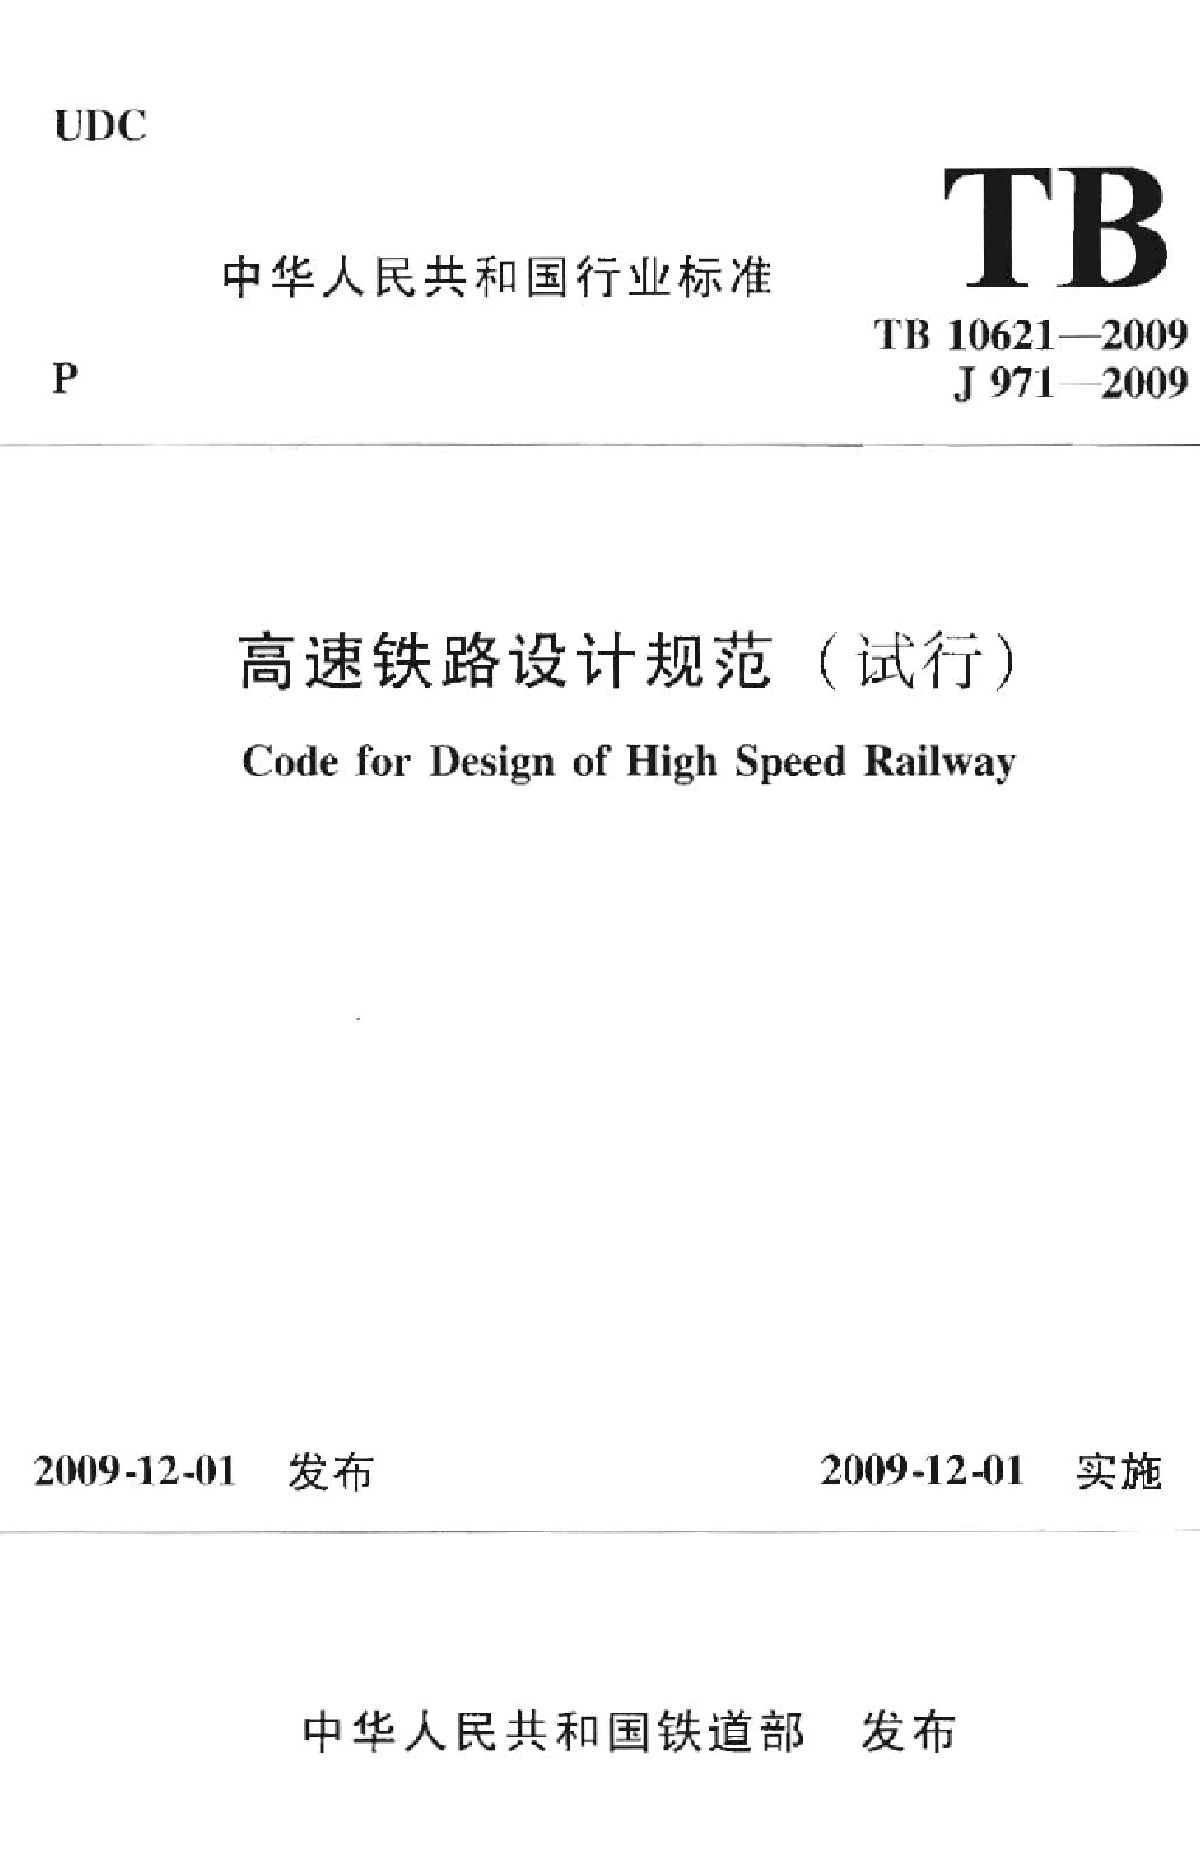 高速铁路设计规范(试行).pdf